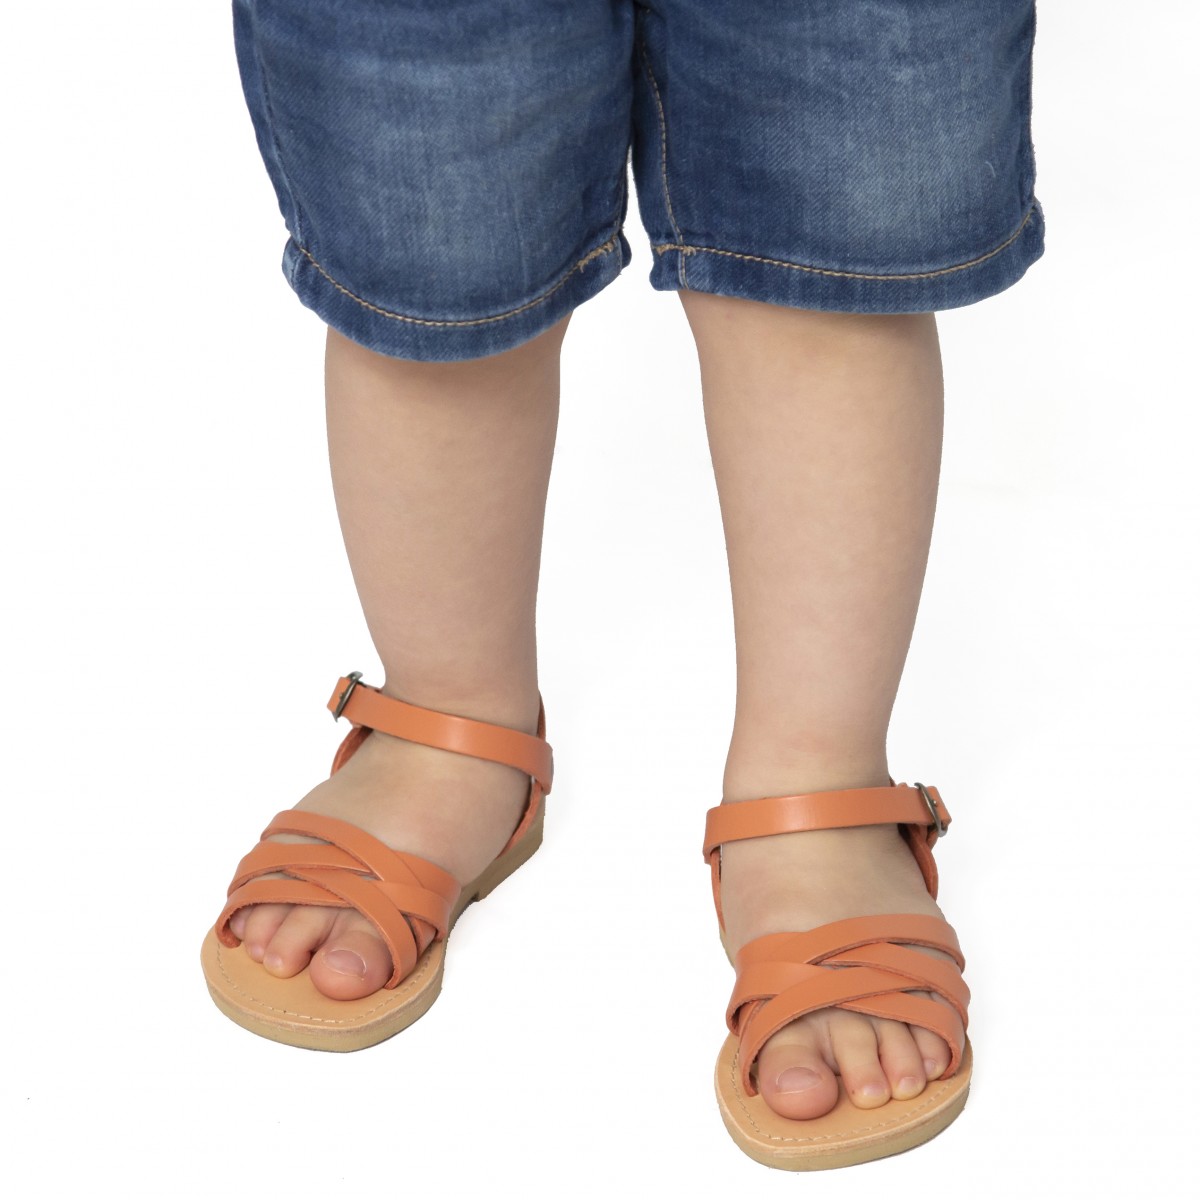 Sandalias gladiadoras trenzadas para niño en piel nobuck azul con cierre de hebilla Attica sandals Zapatos Zapatos para niño Sandalias 